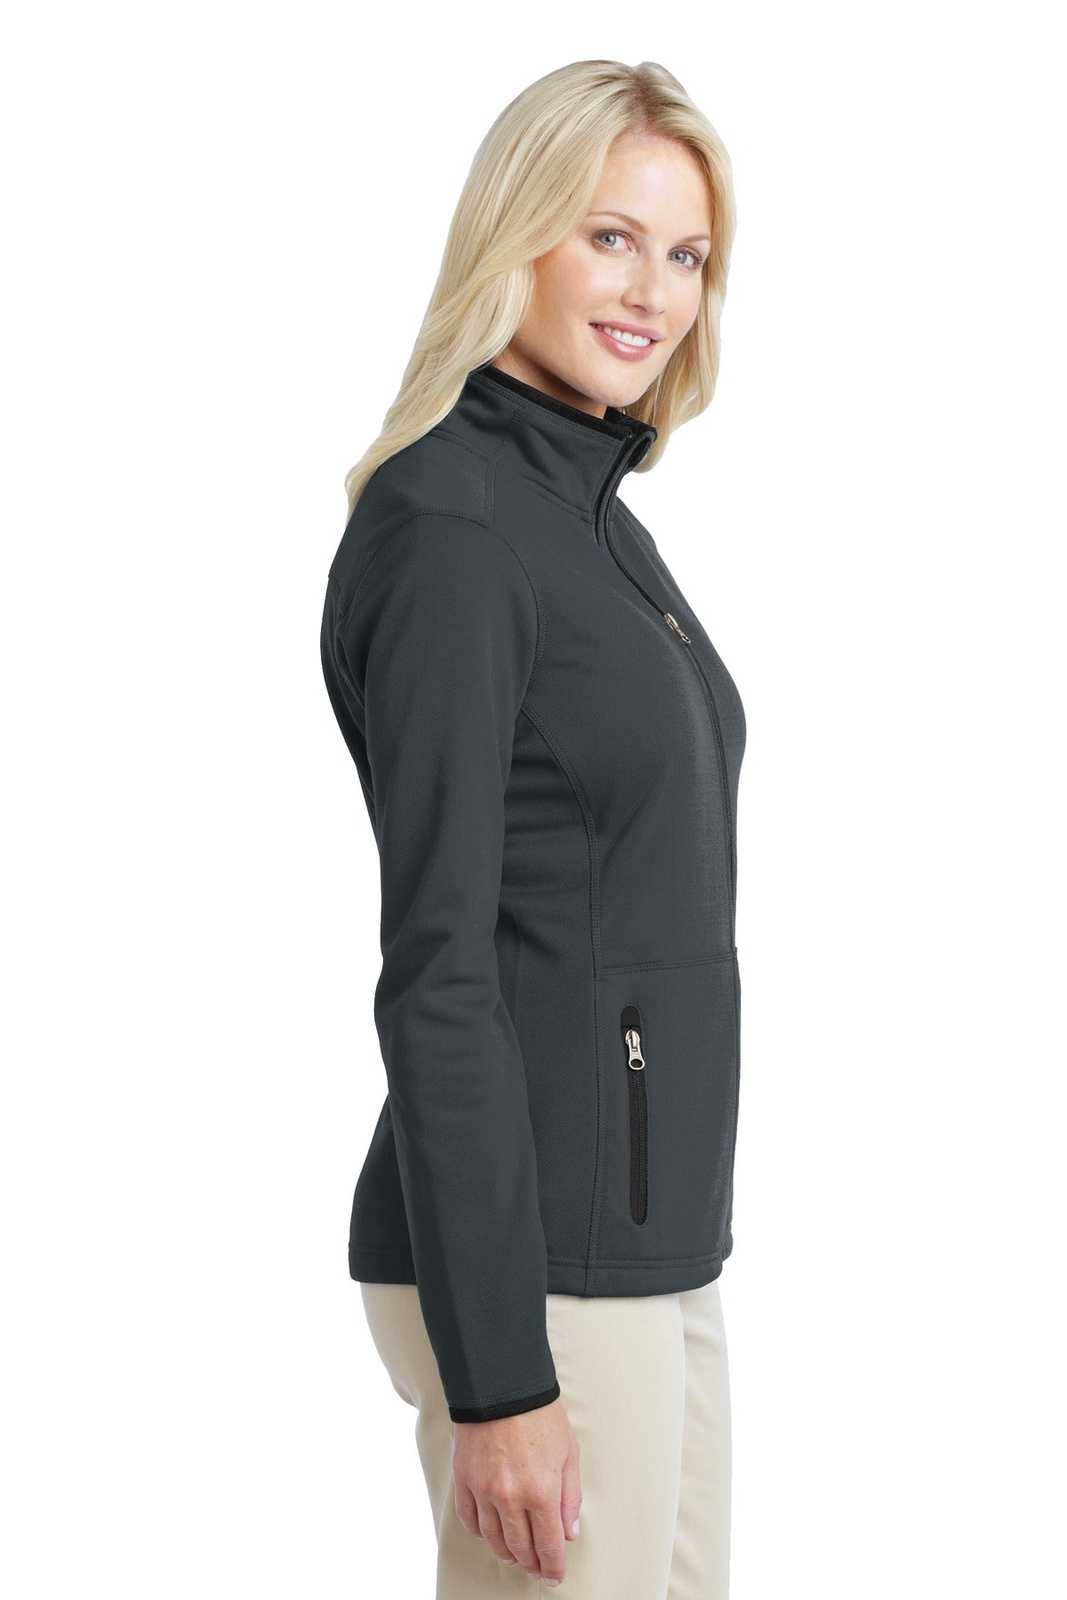 Port Authority L222 Ladies Pique Fleece Jacket - Graphite - HIT a Double - 3